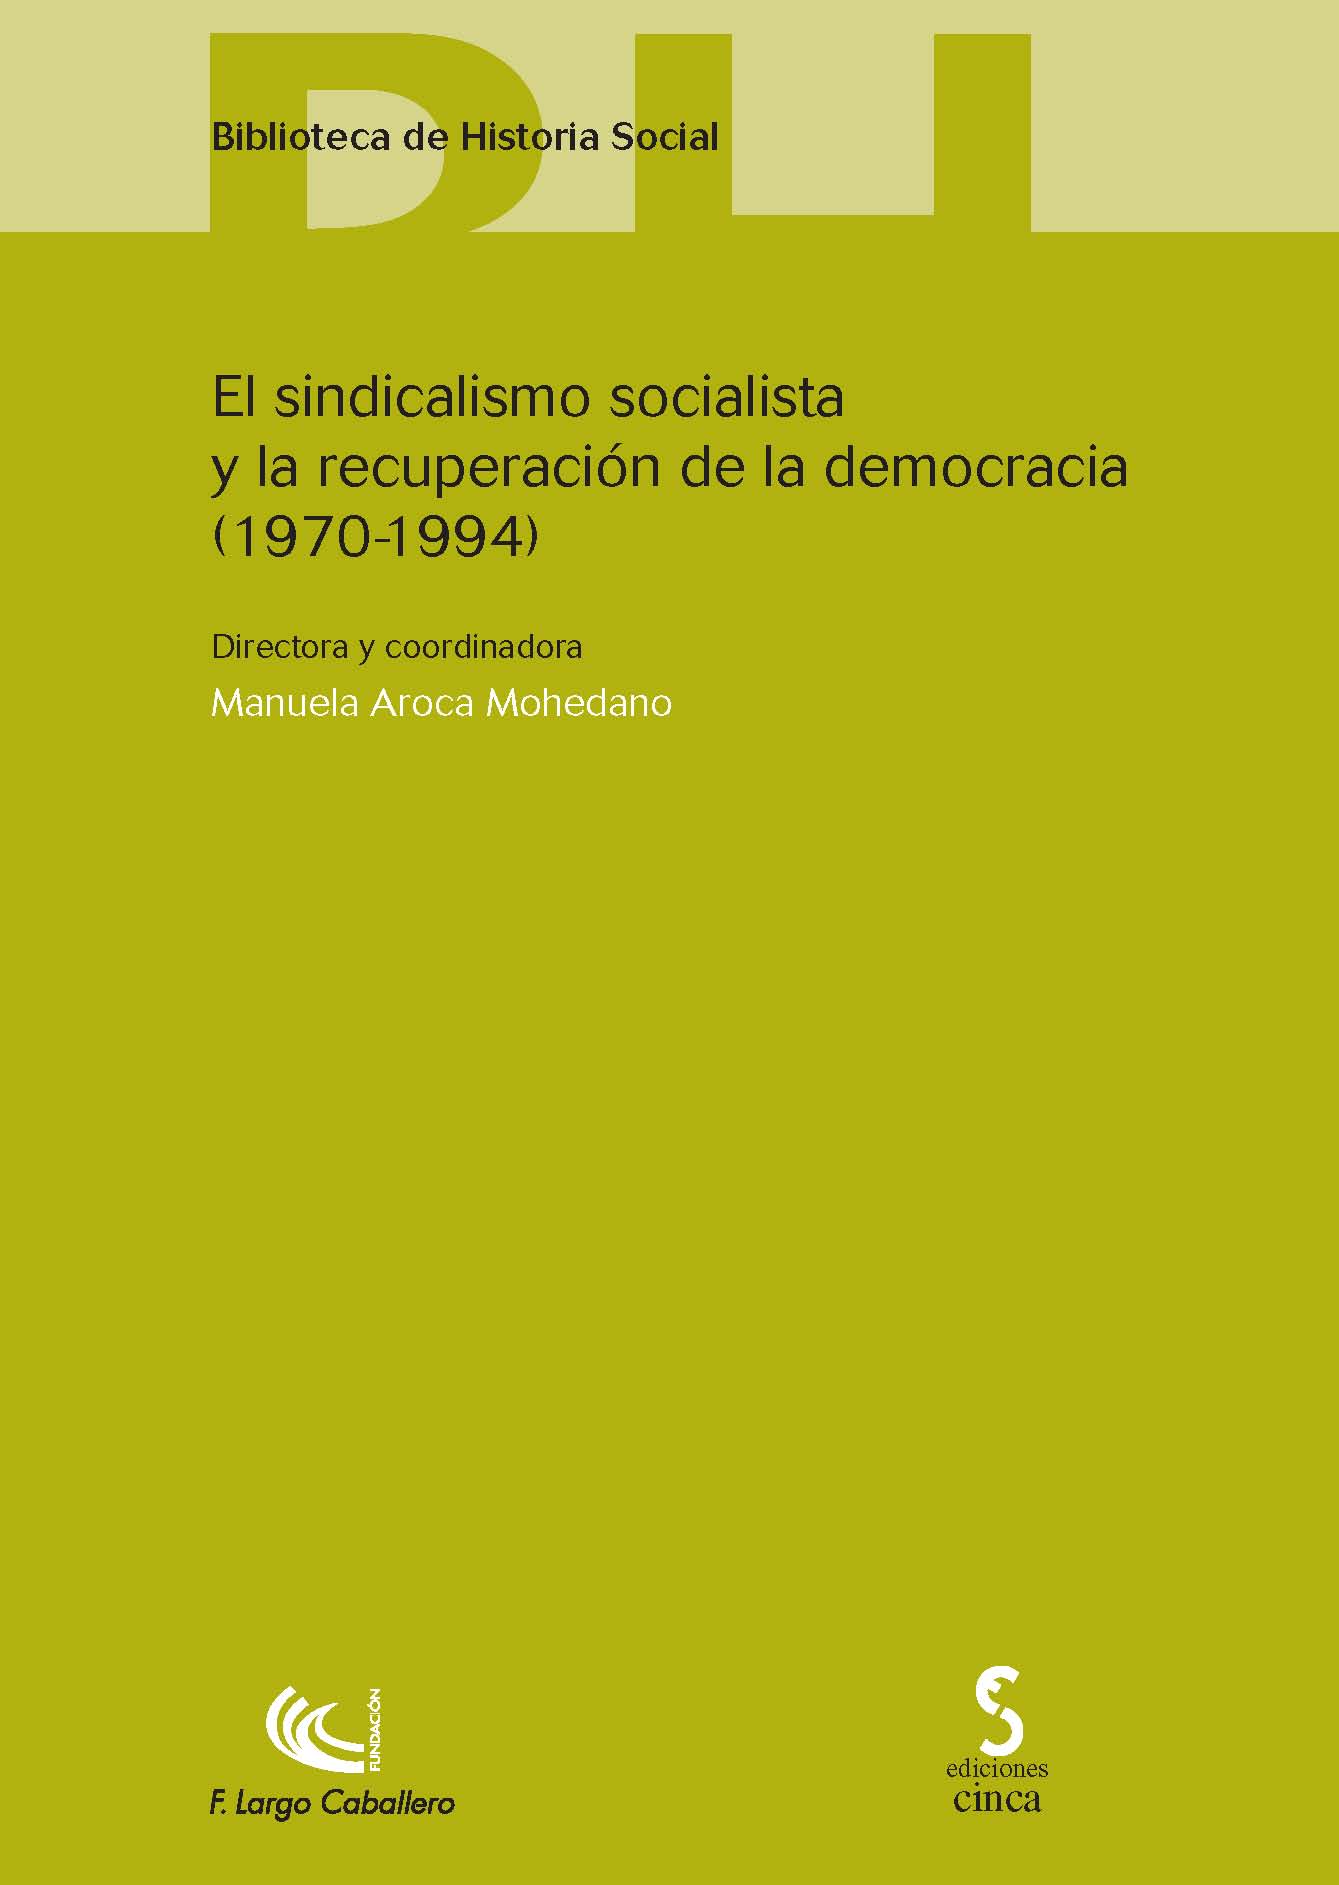 El sindicalismo socialista y la recuperación de la democracia